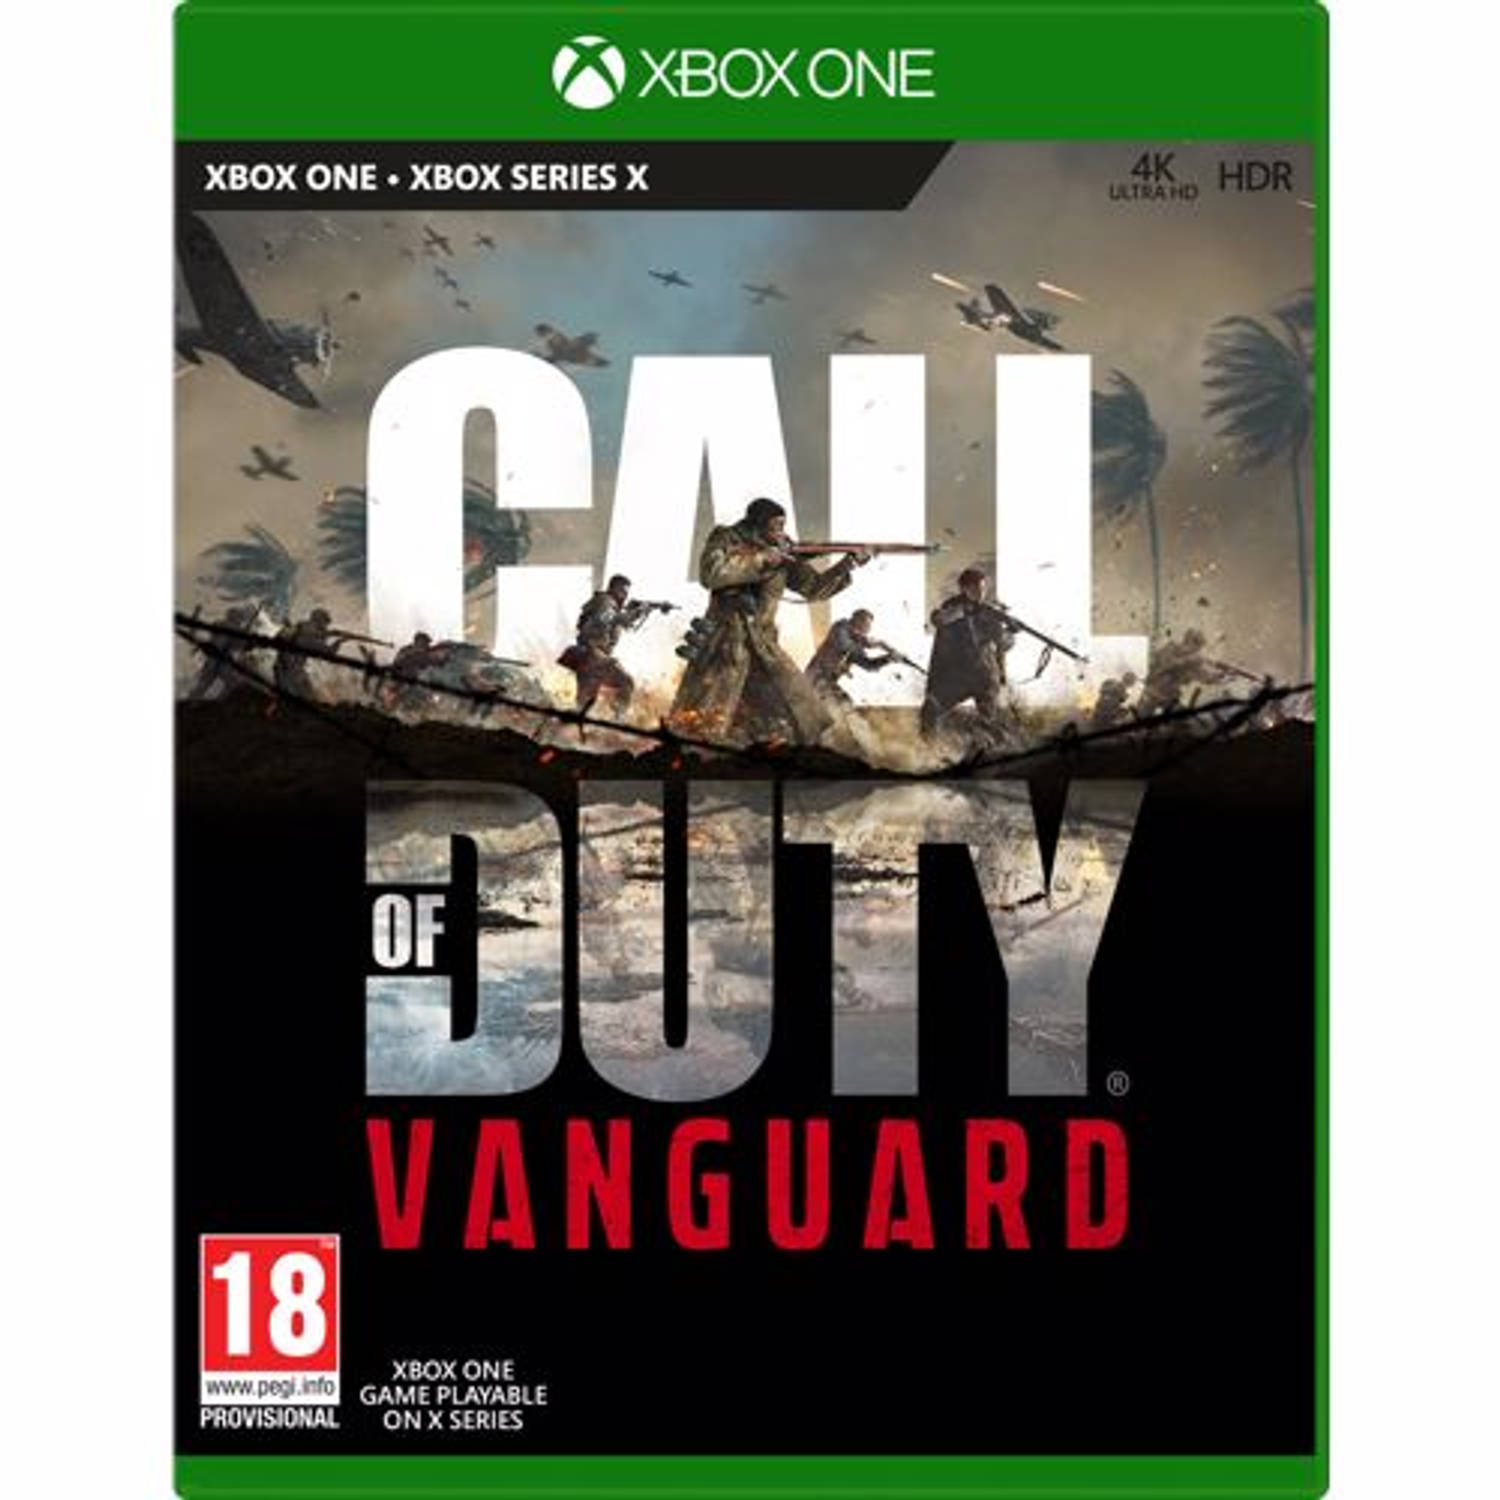 Call of Duty Vanguard Xbox One